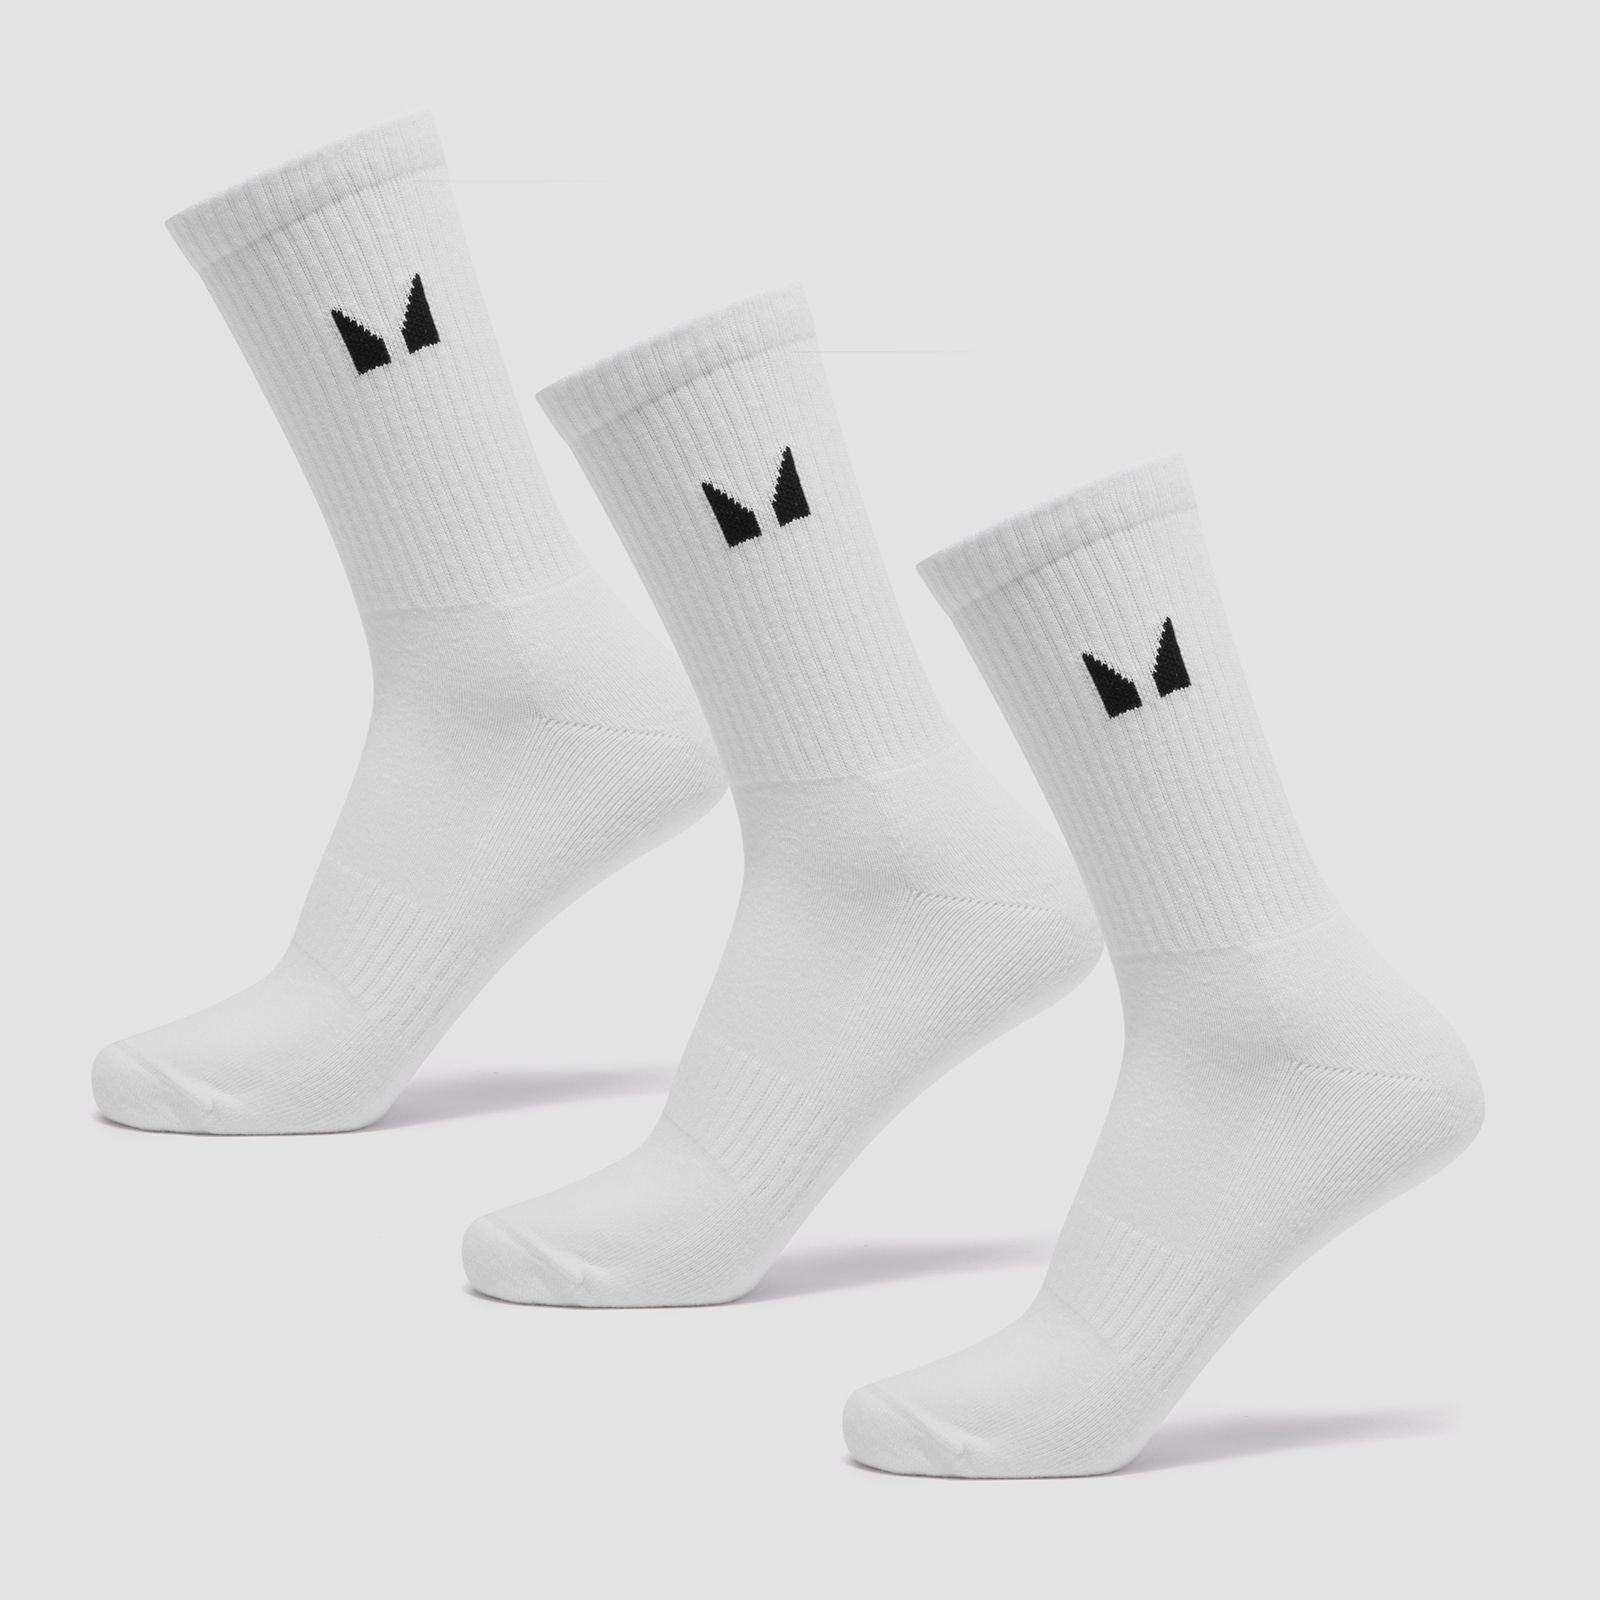 Image of MP Unisex Socks (3 Pack) - White - UK 2-5